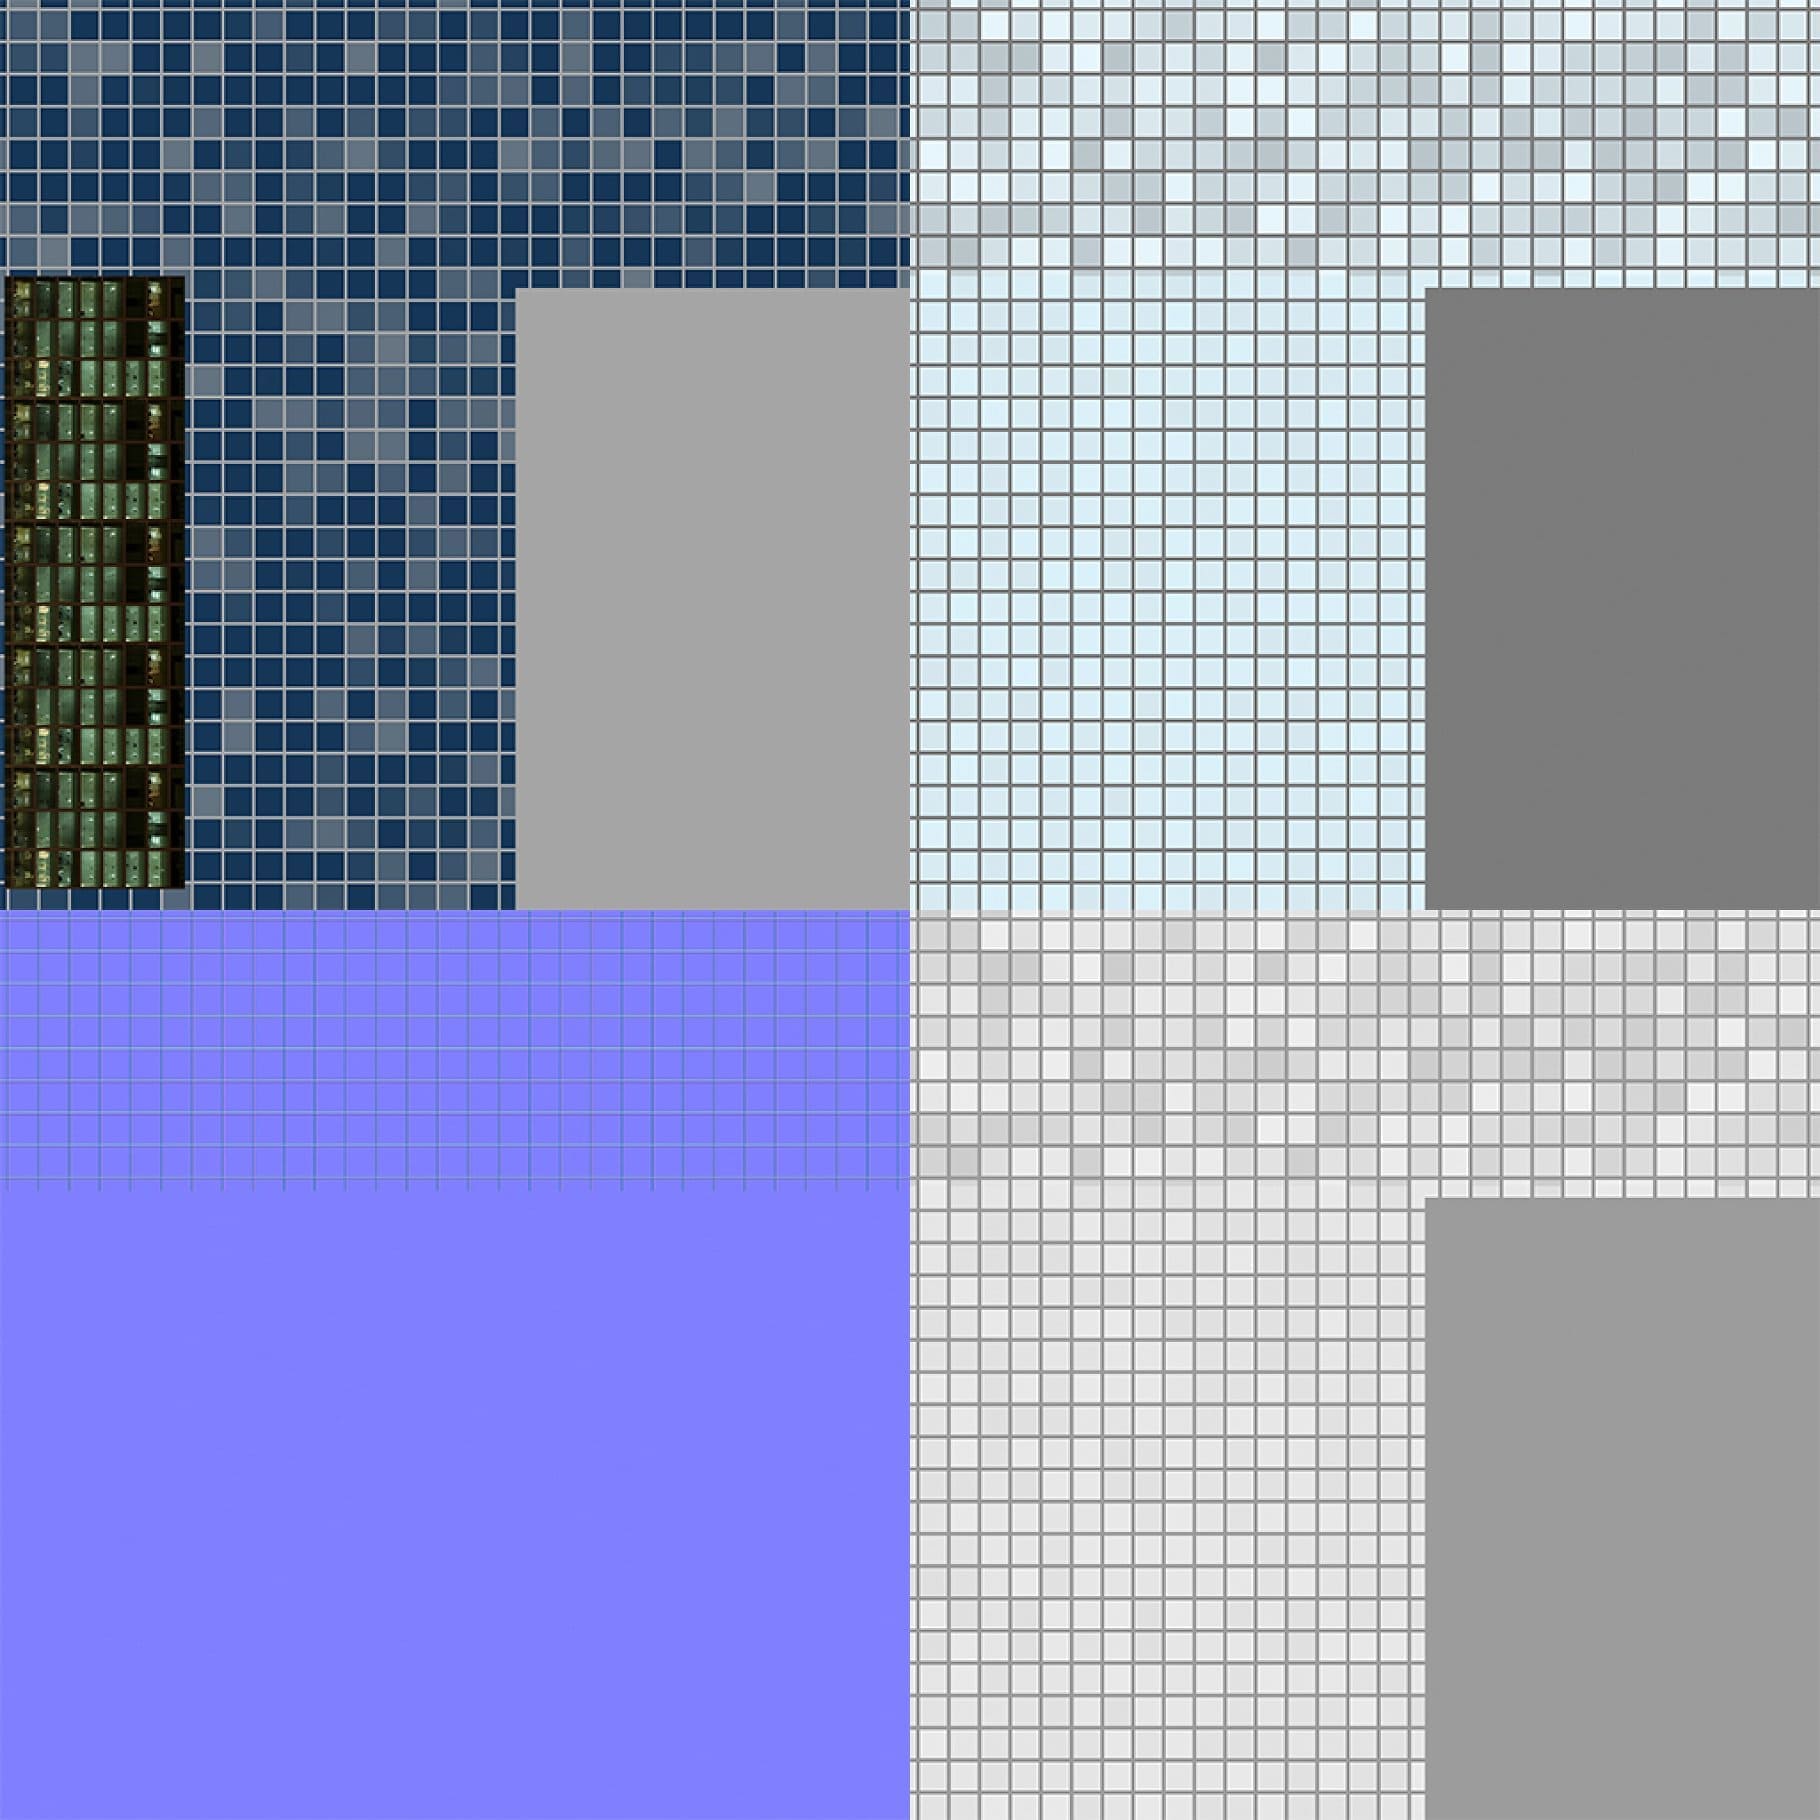 Samples of the color gamut of skyscraper materials.